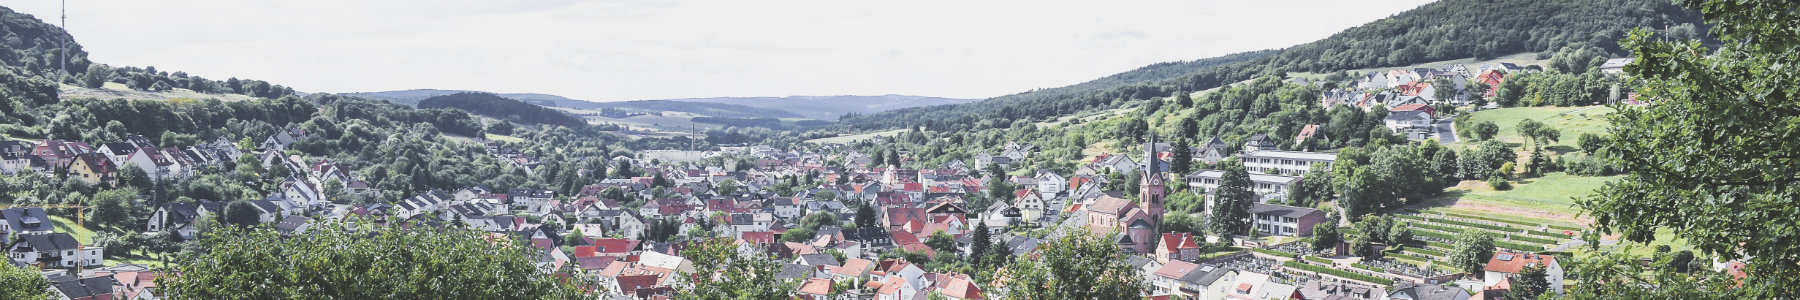 Gemeinderat – Gemeinde Waldaschaff - Reizvoll, Naturverbunden, Erlebnisreich